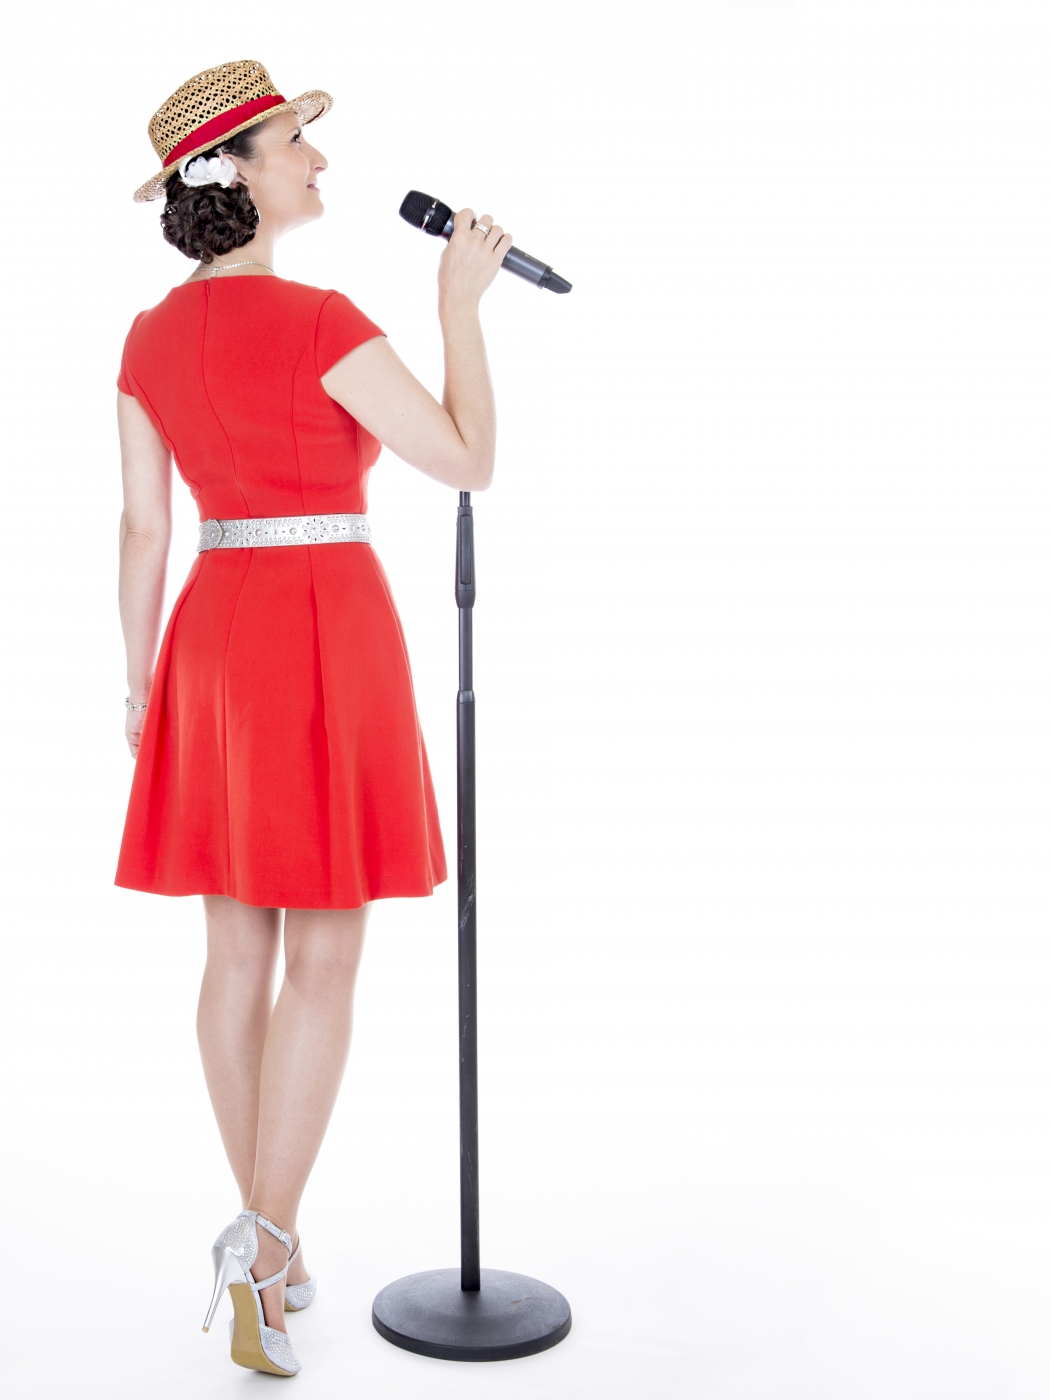 Brautjungfer in rotem Kleid singt bei der Hochzeitsfeier neben einem Mikrofonständer, zurück zur Kamera gewandt.